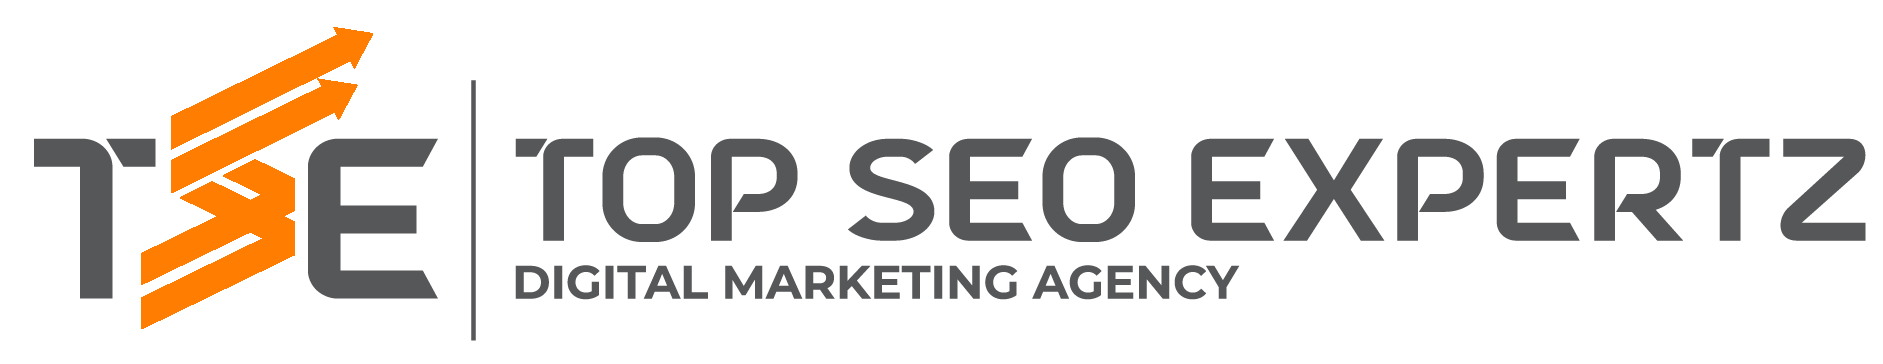 Top SEO Expertz Logo for Services